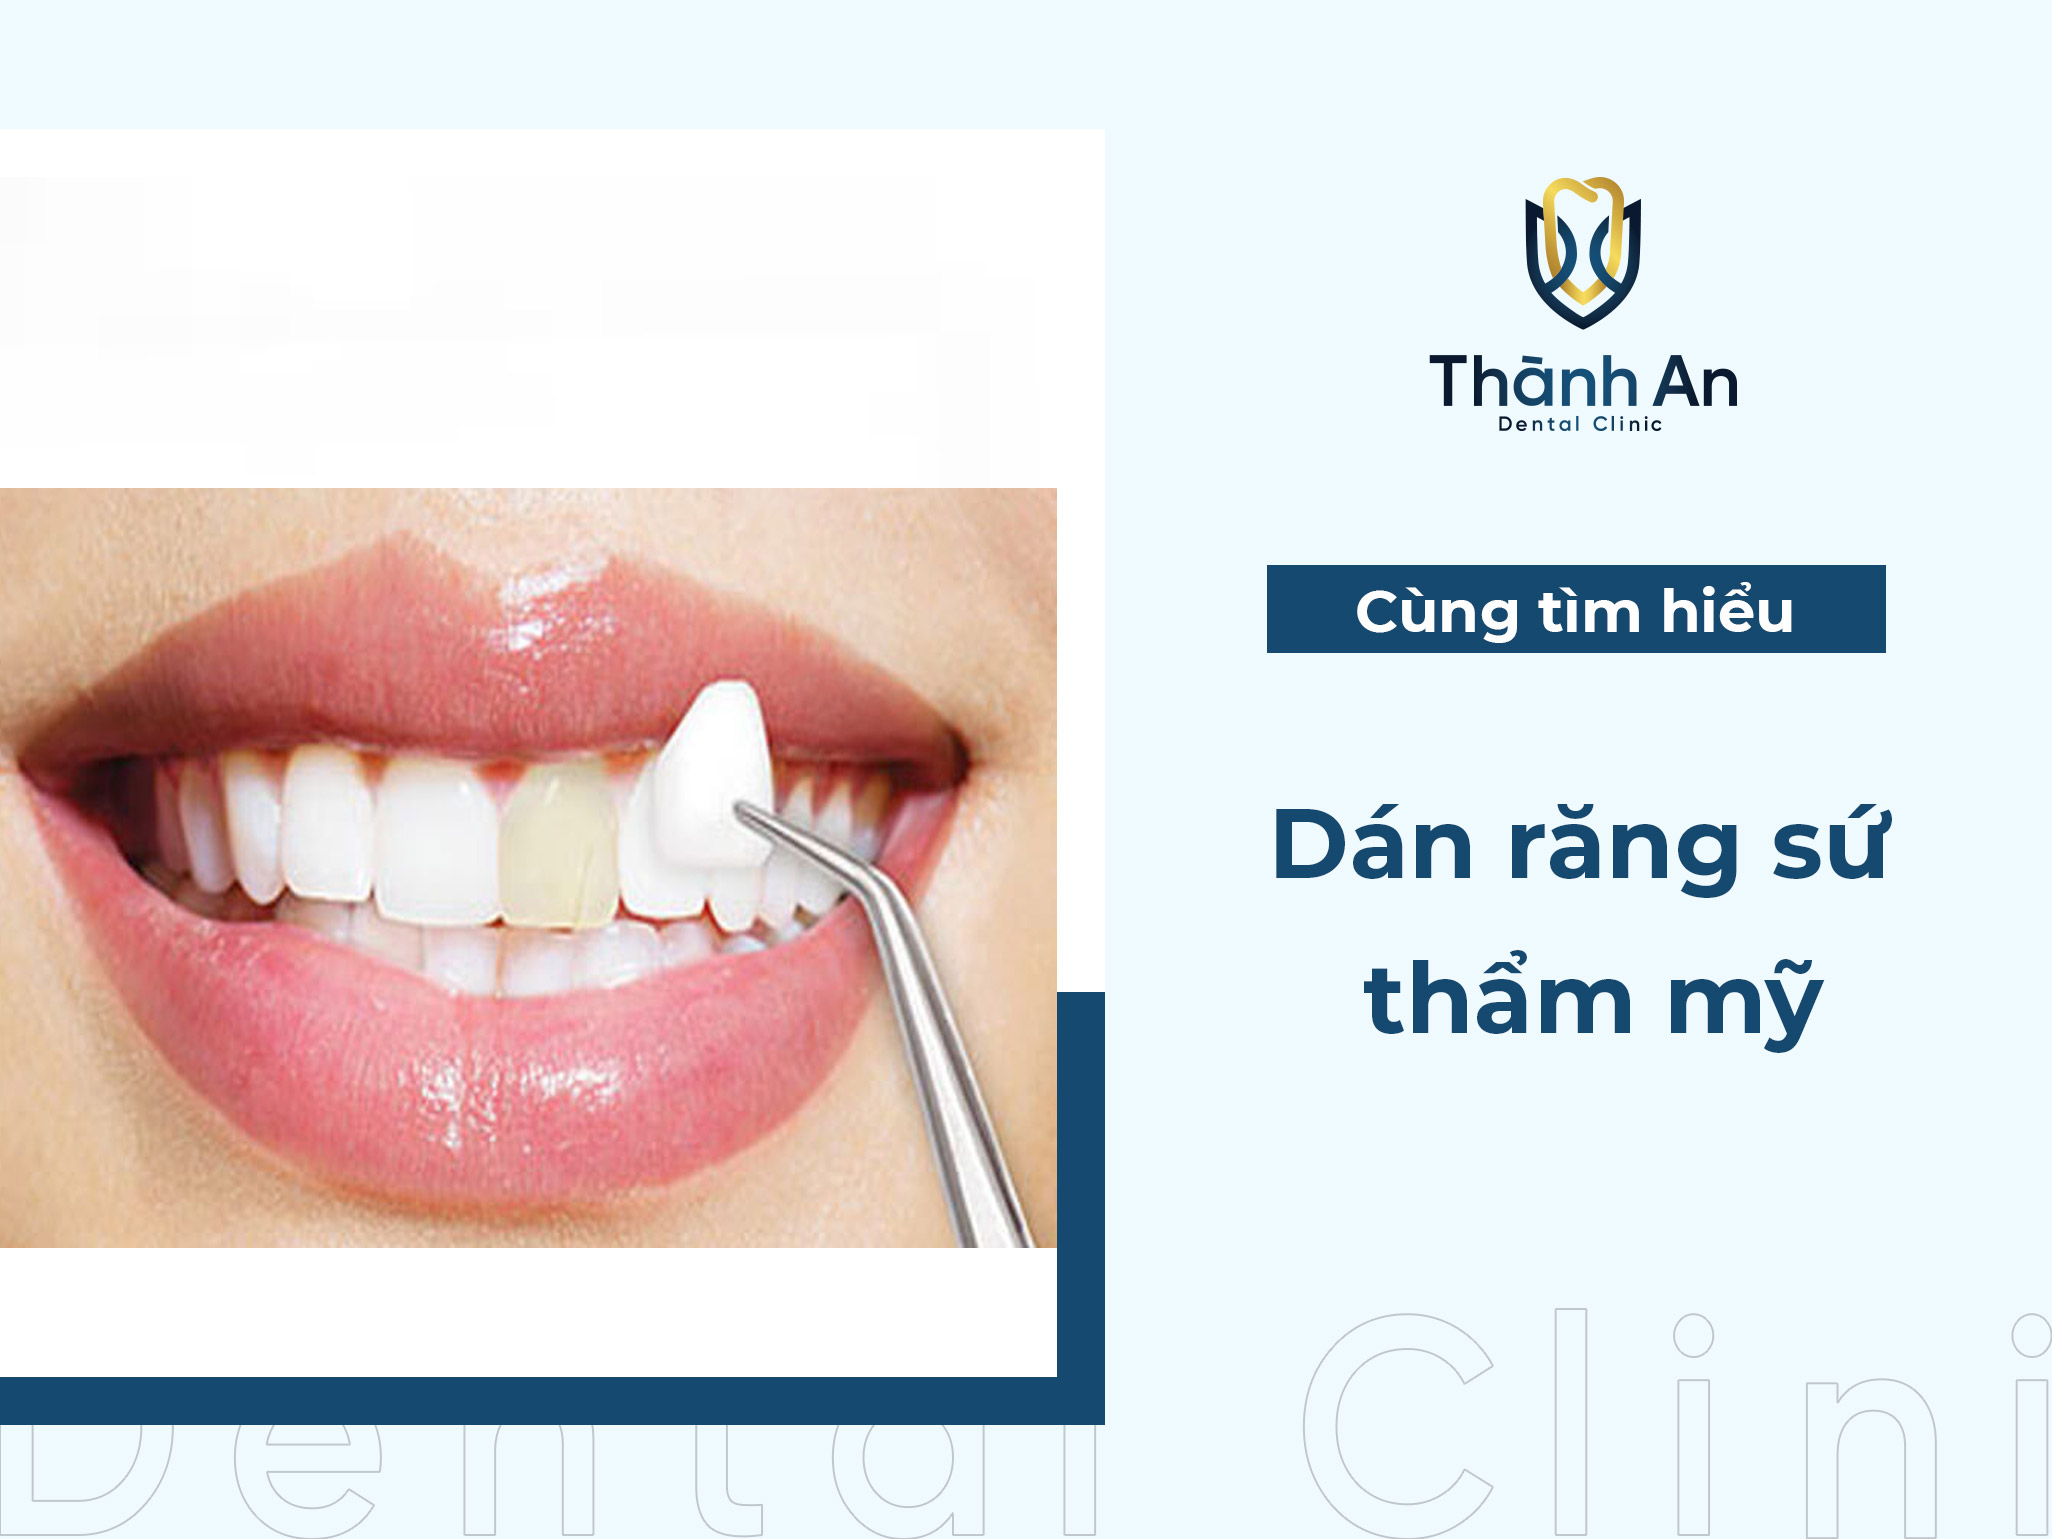 Dán răng sứ thẩm mỹ là gì? So sánh bọc răng sứ và dán răng sứ